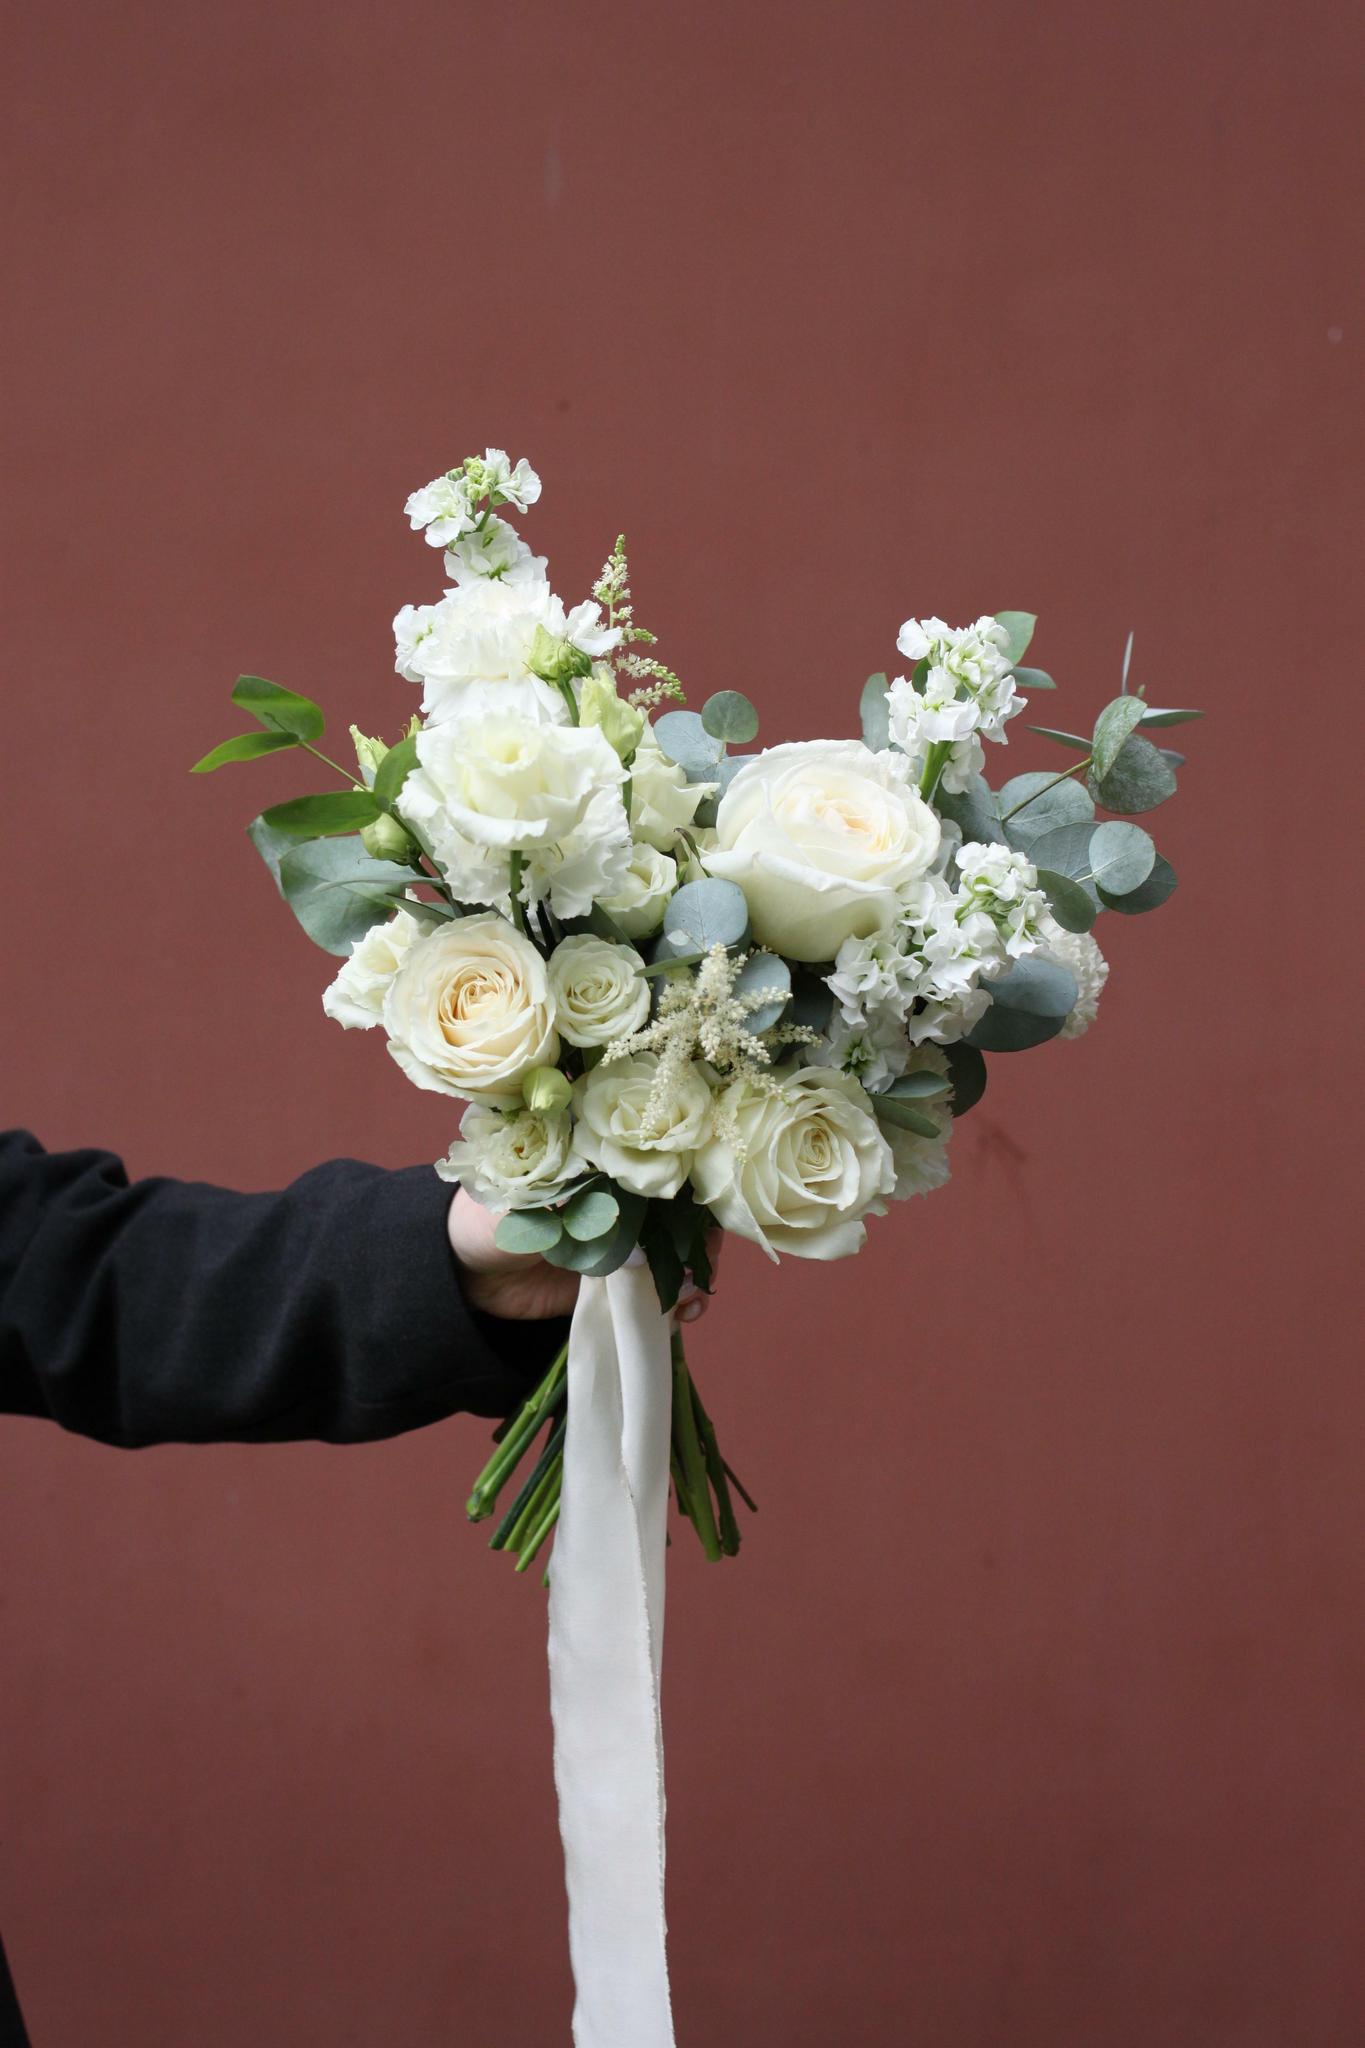 Cвадебный букет невесты: букеты на свадьбу, свадебные цветы в Харькове